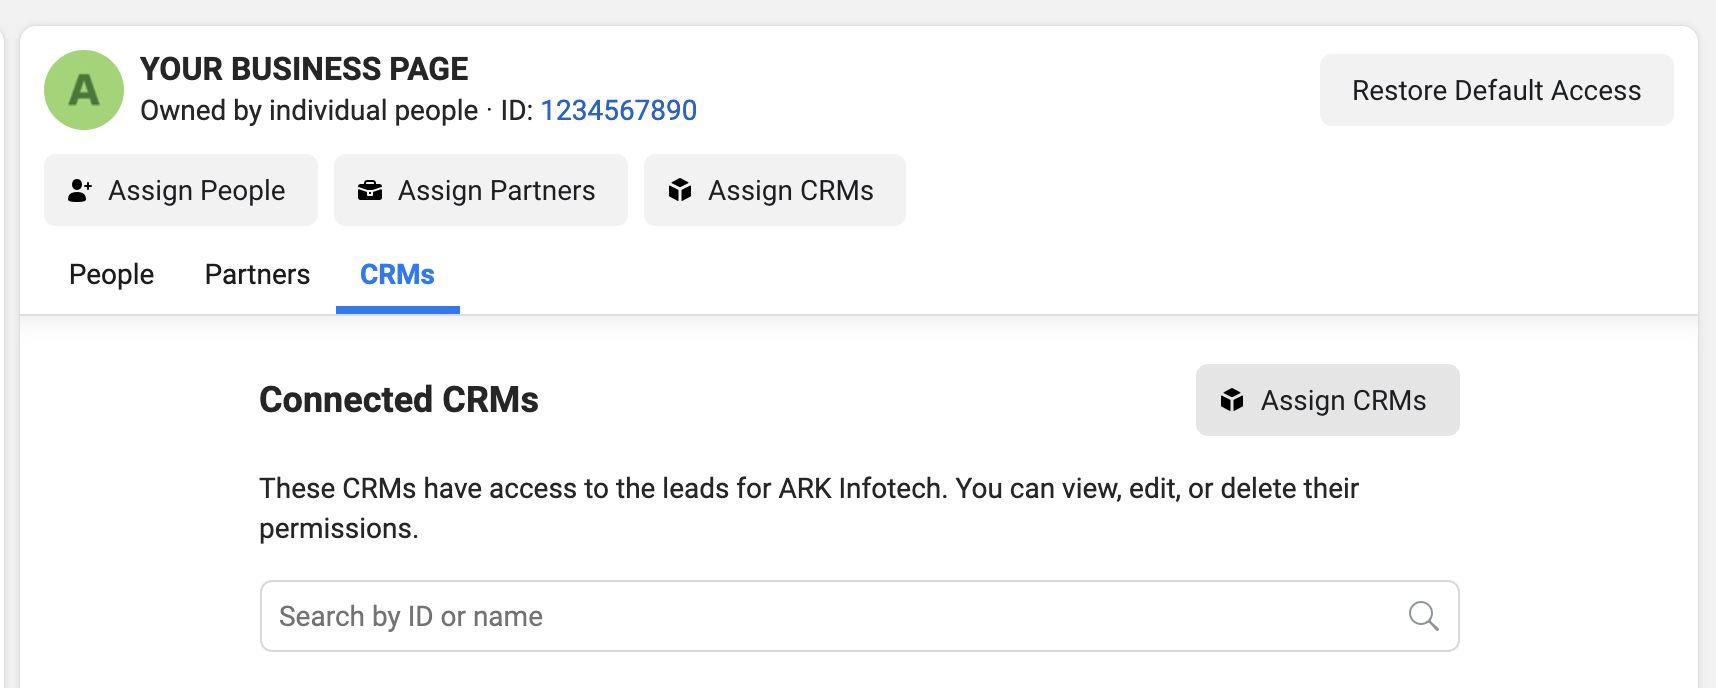 Click Assign CRMs